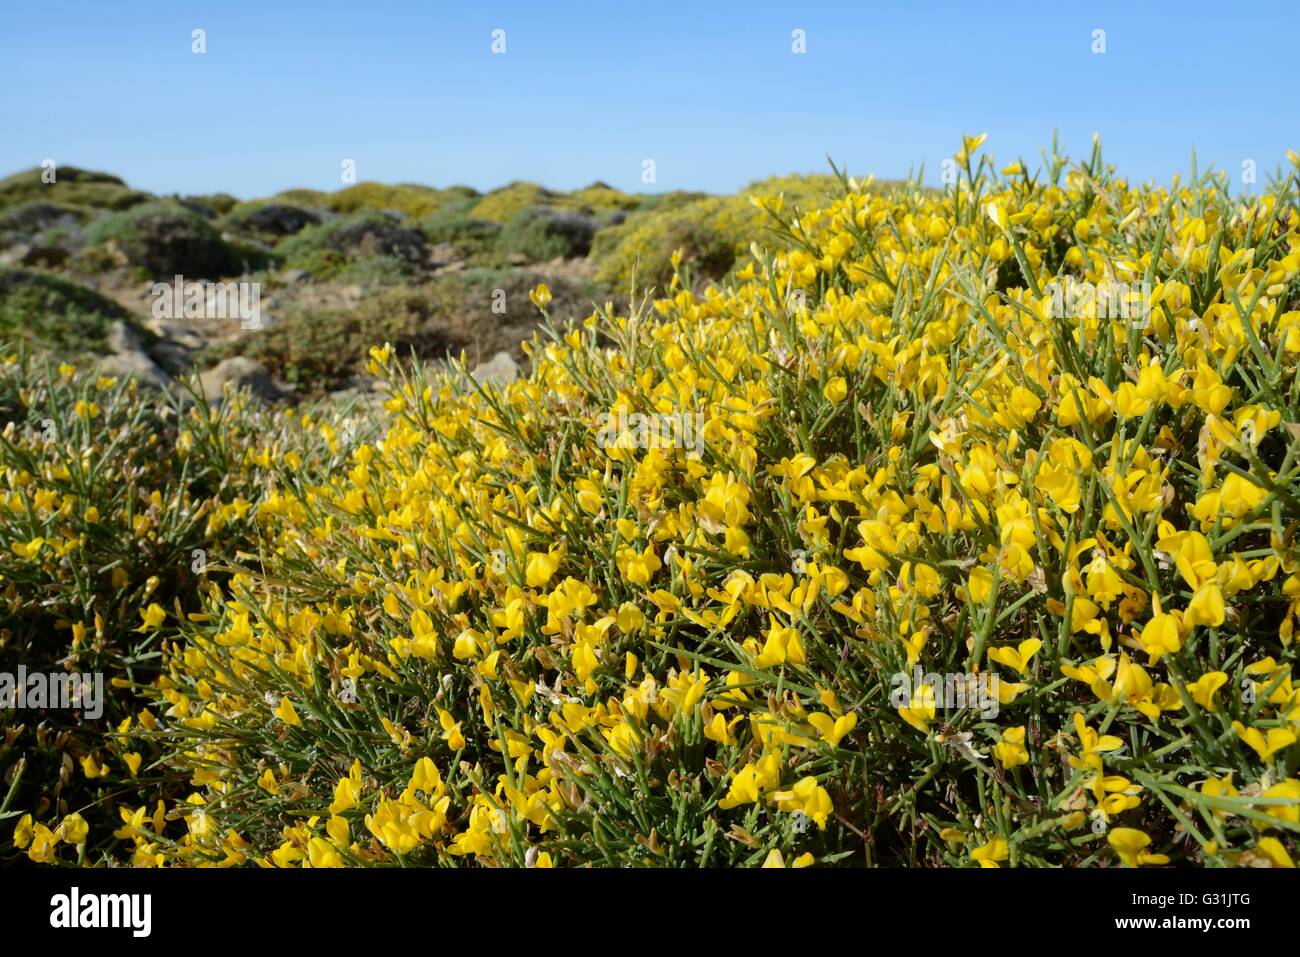 Büschel von niedrig wachsenden Ginster (Genista Acanthoclada) mit stacheligen Blättern unter Garrigue / Phrygana Buschland, Lasithi, Kreta, Griechenland Stockfoto